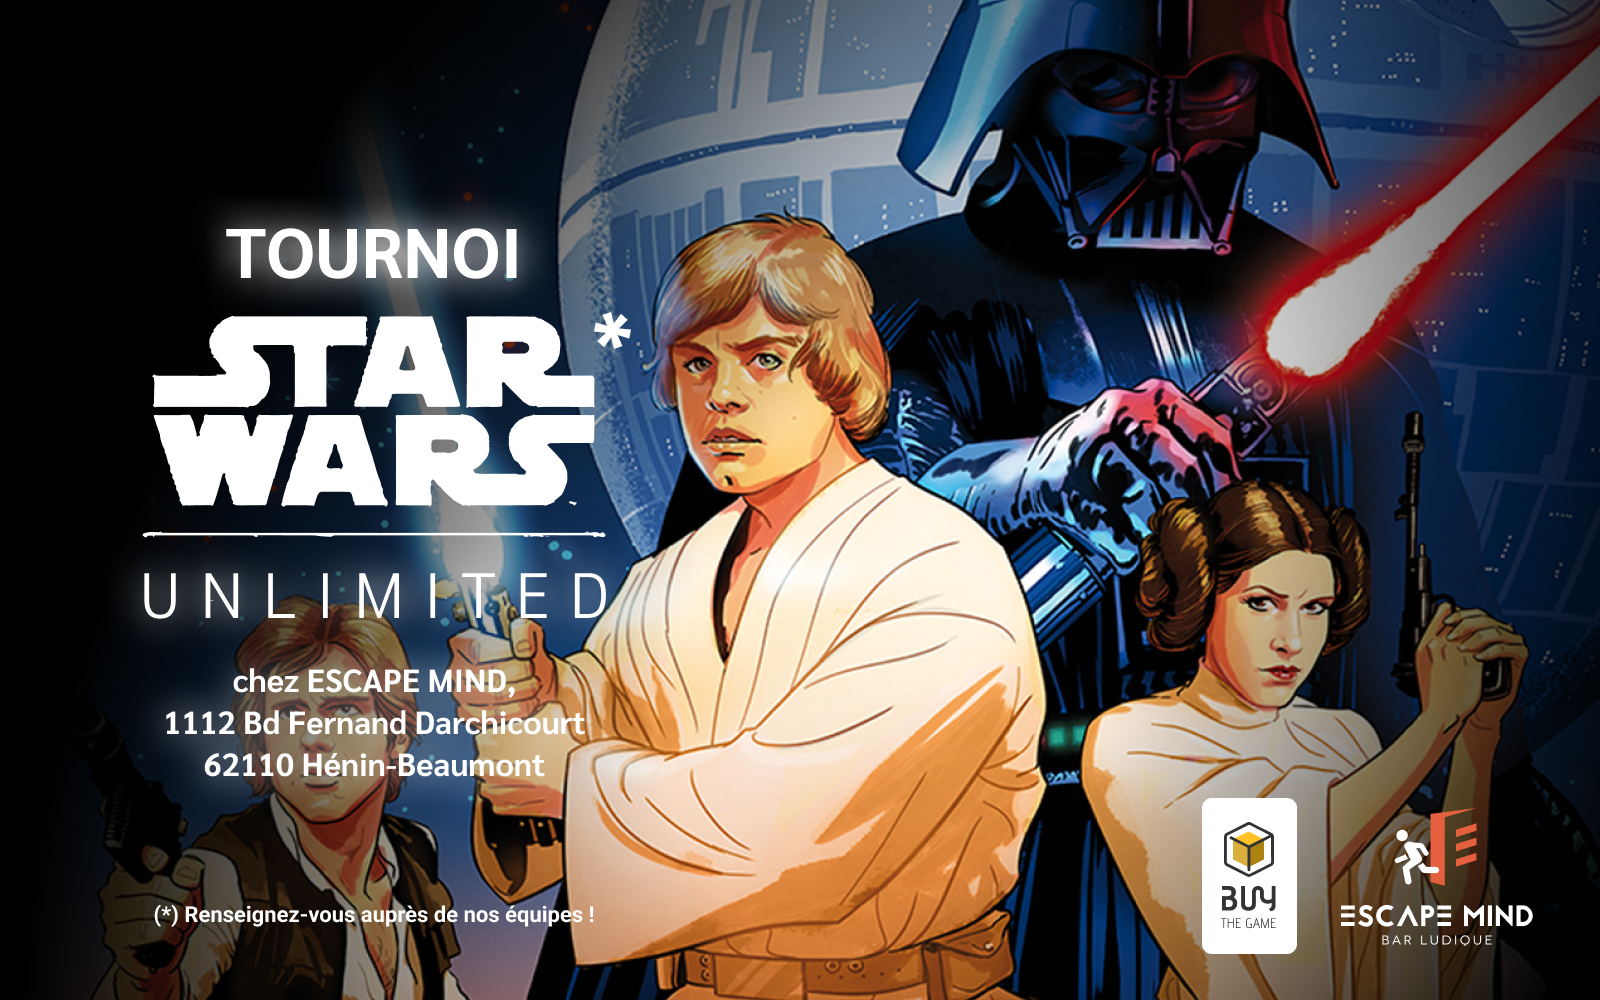 Tournoi Star Wars Unlimited